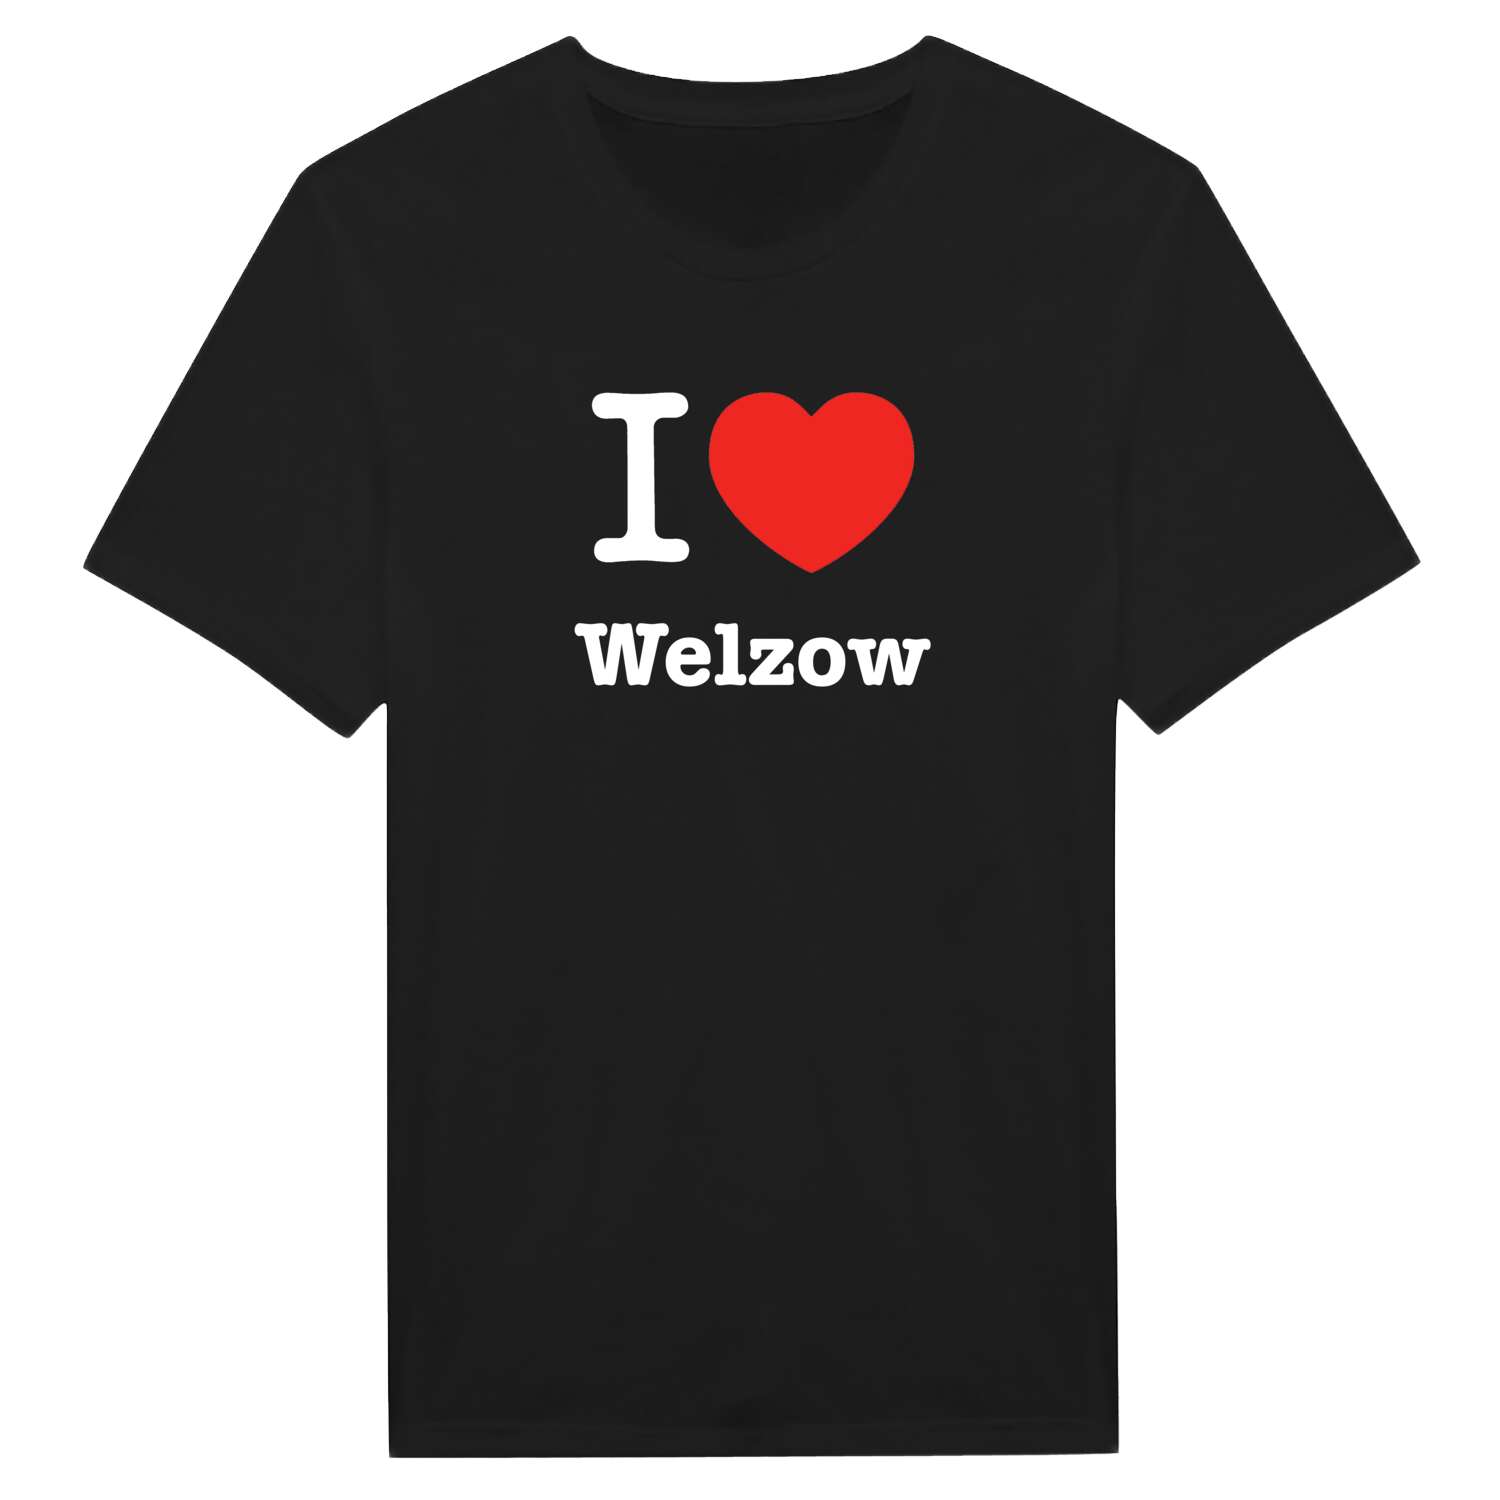 Welzow T-Shirt »I love«